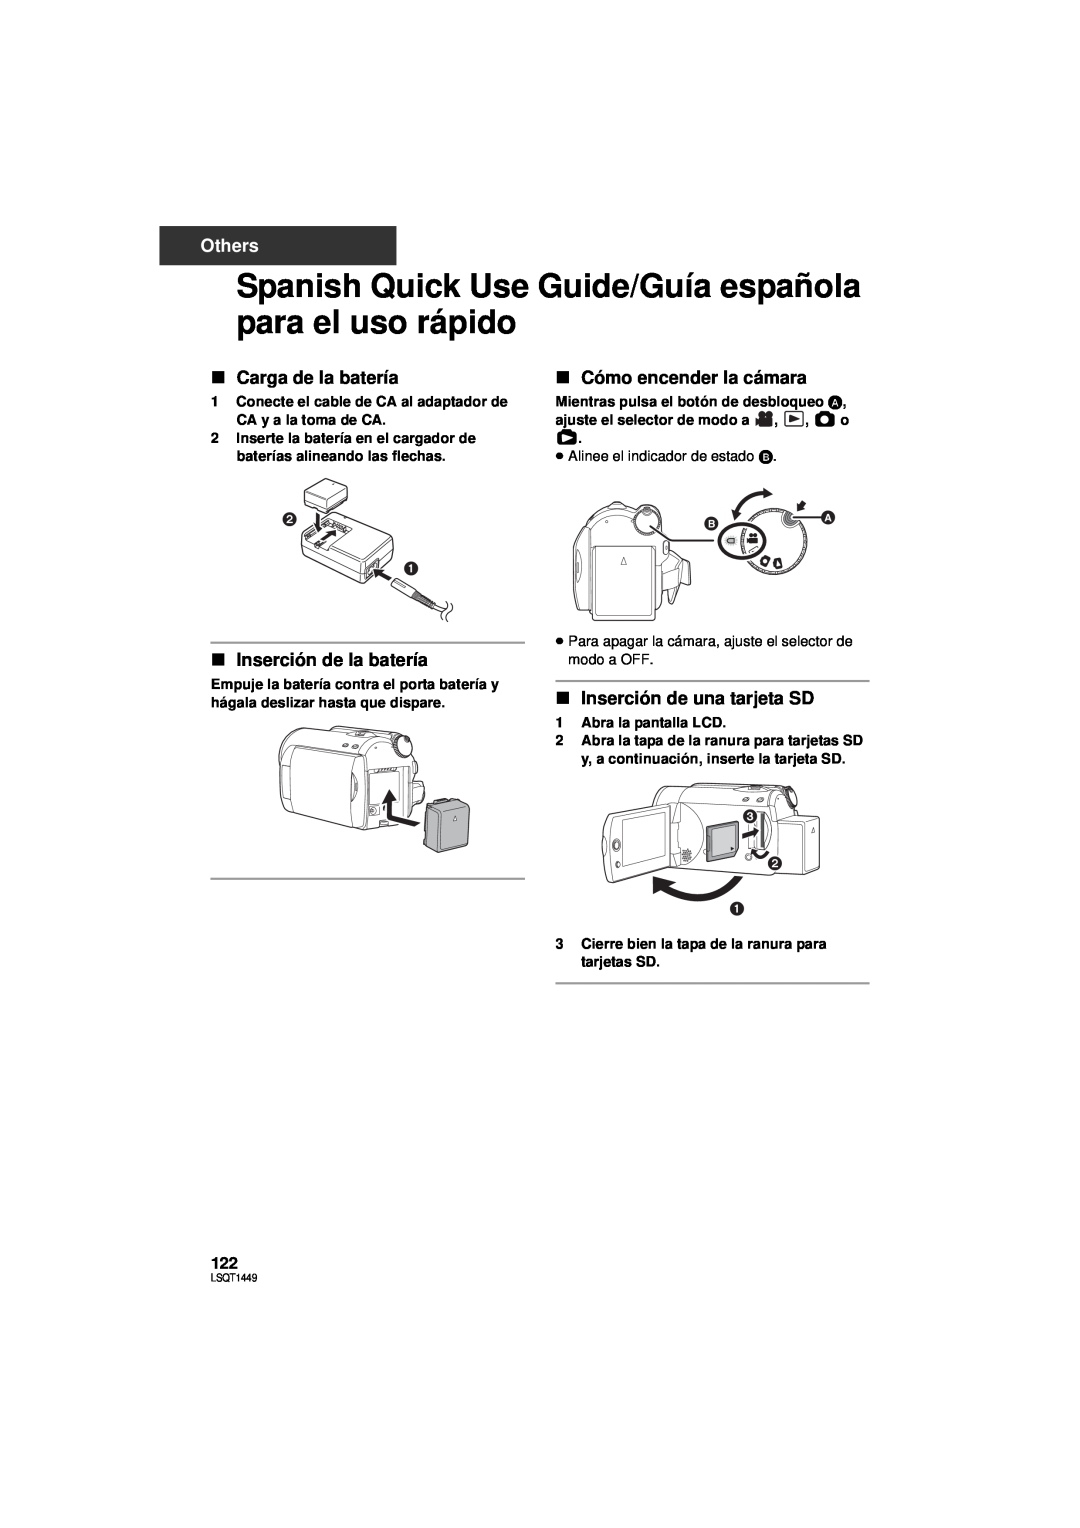 Panasonic SDR-H80P, SDR-H90P Spanish Quick Use Guide/Guía española para el uso rápido, ∫ Carga de la batería, Others 